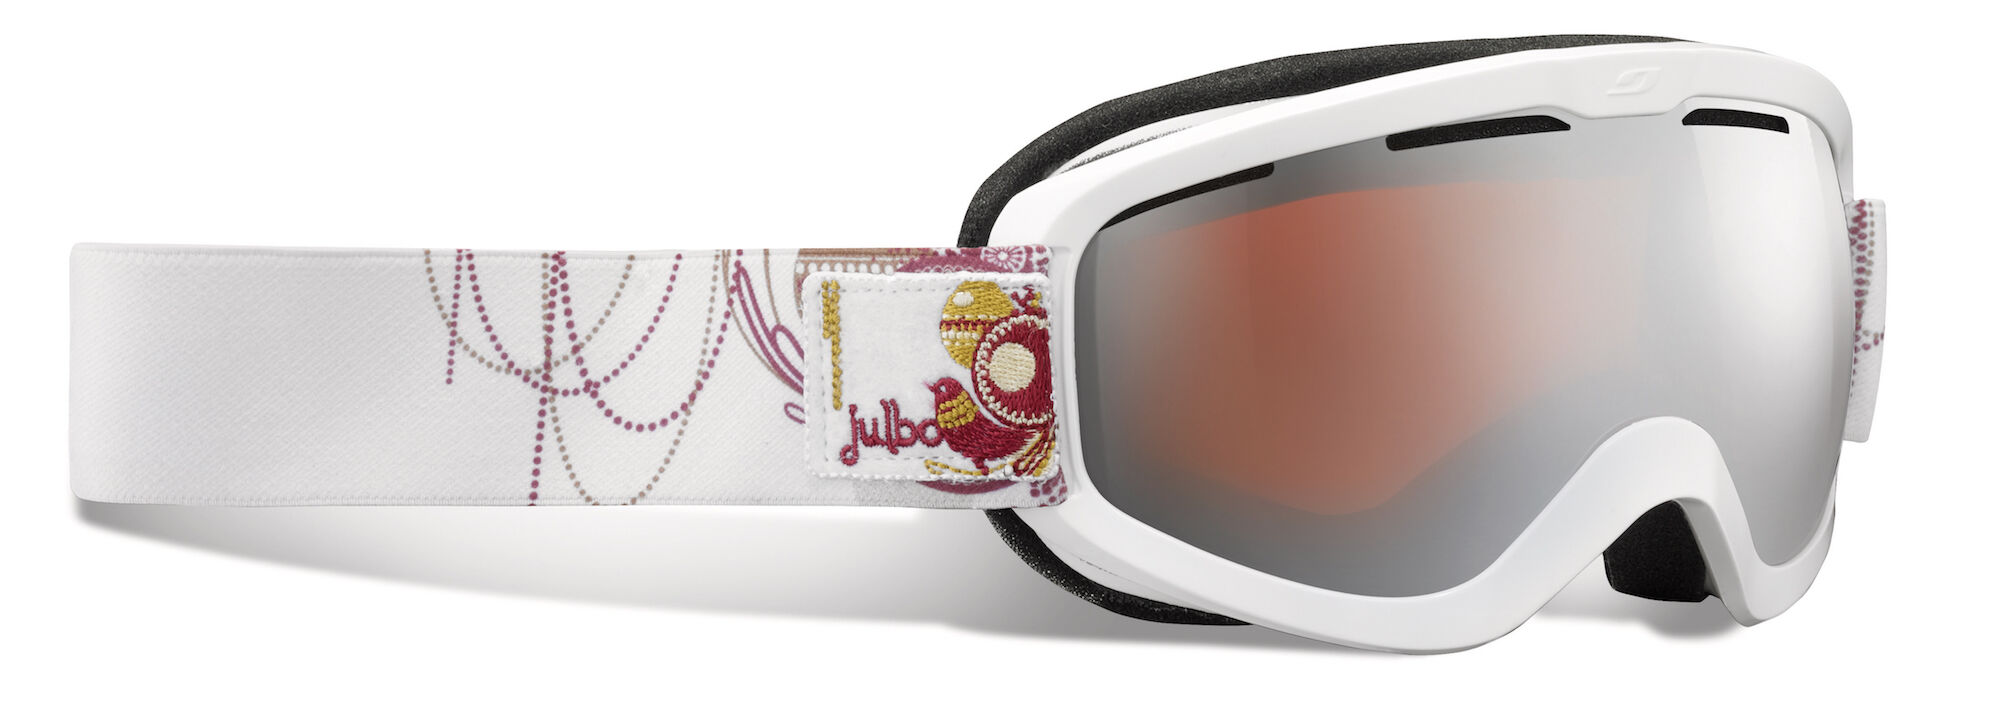 Julbo Vega - Deals - Ski goggles - Women's